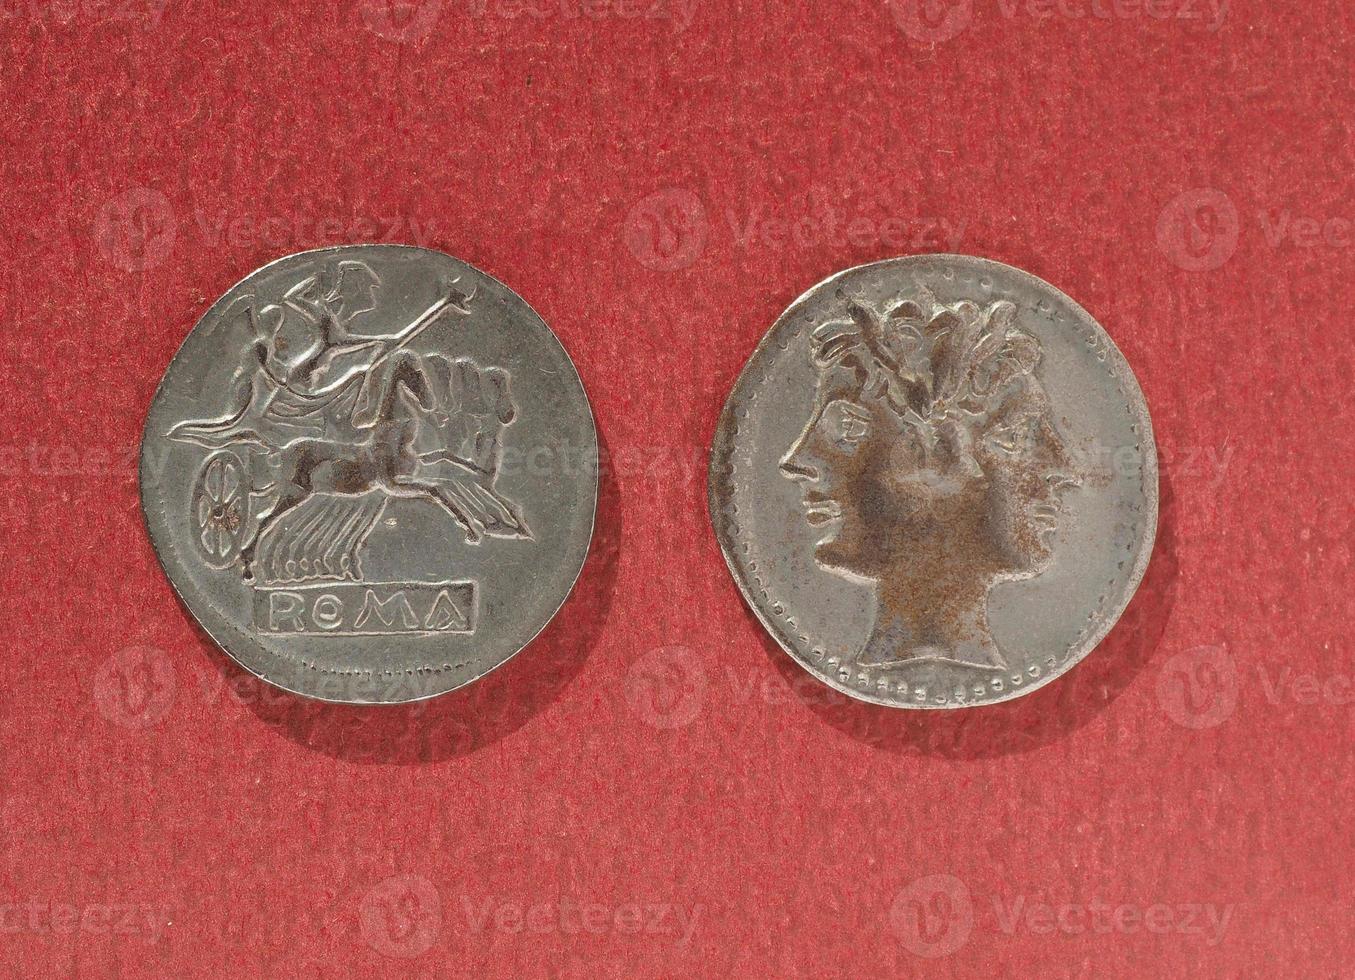 antike römische Münze foto